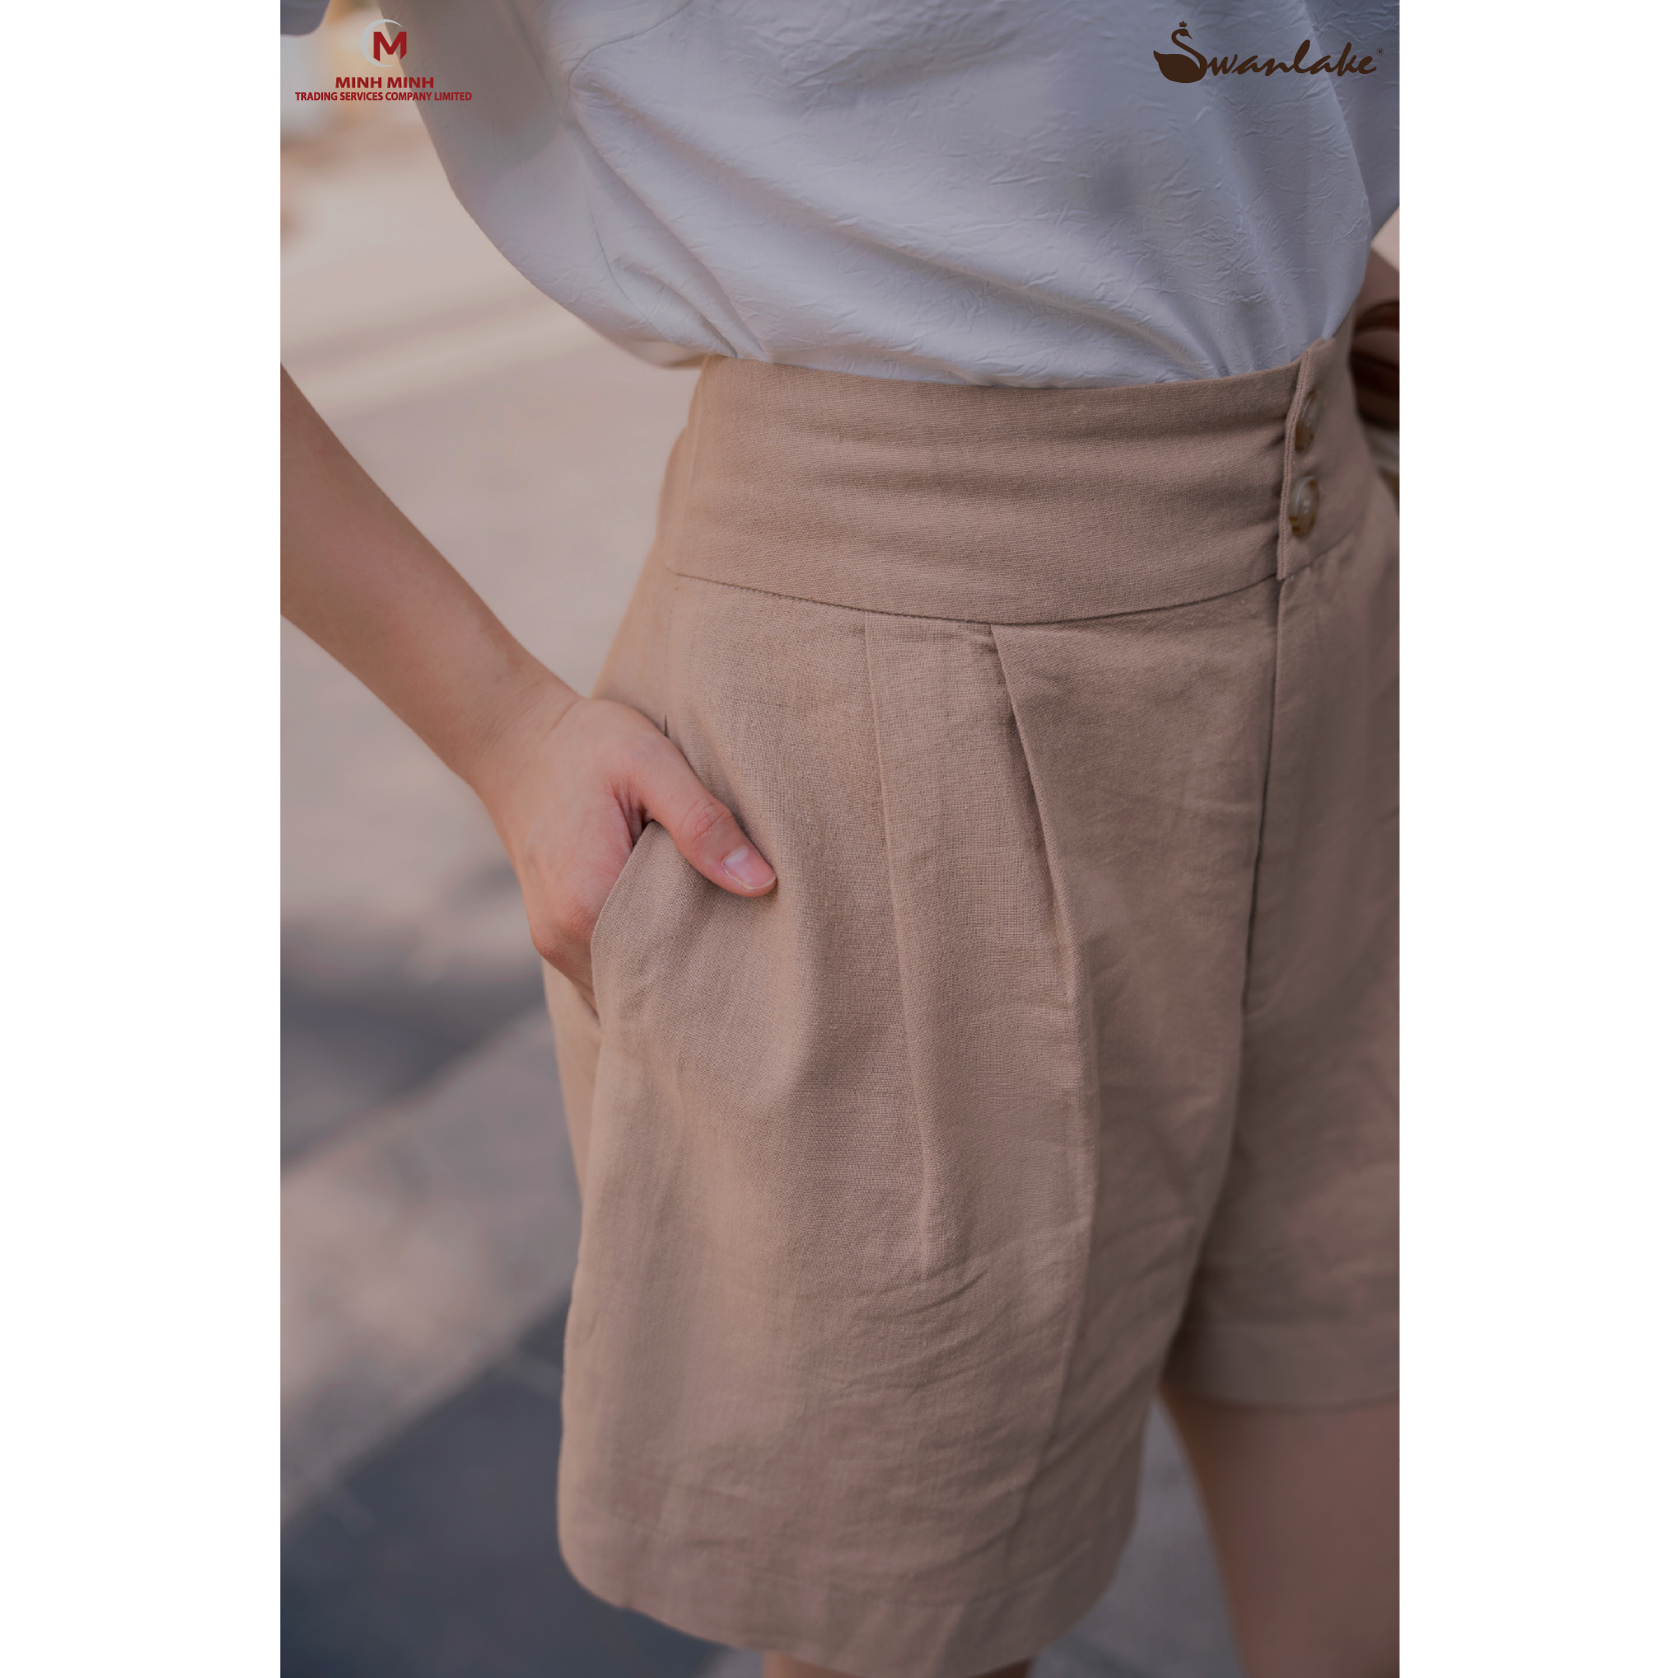 Quần short nữ mùa hè gài nút vải linen Swanlake - Mã Q09907LW01 thumbnail